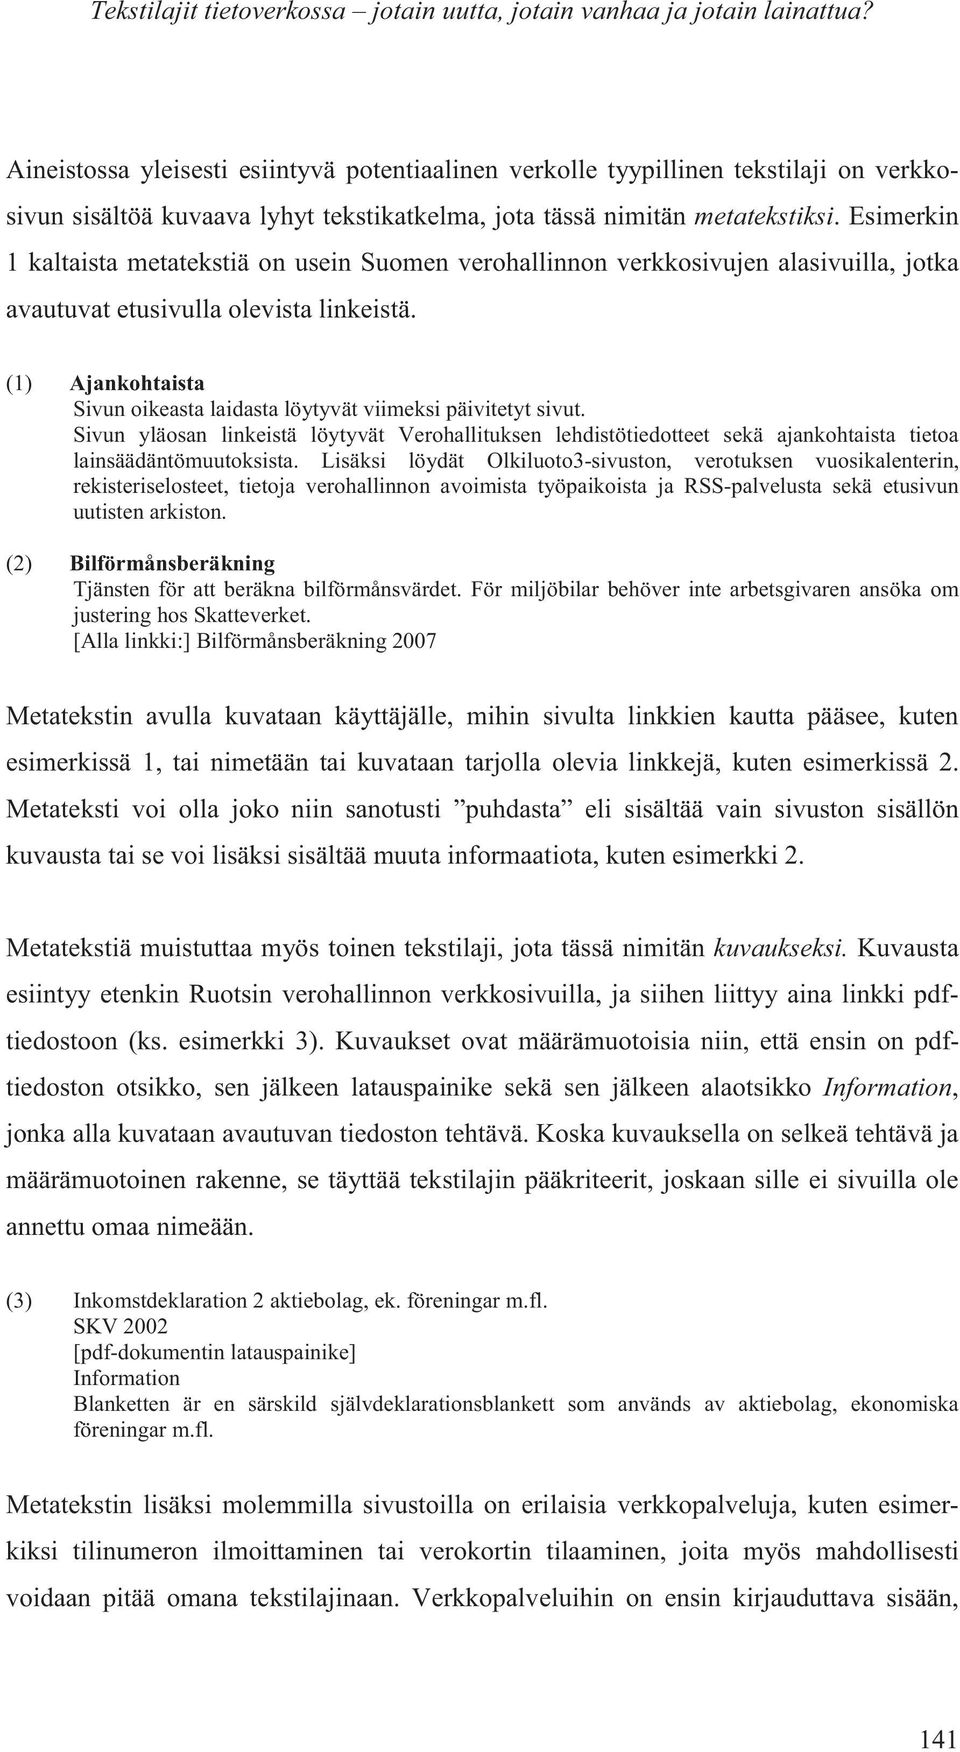 Esimerkin 1 kaltaista metatekstiä on usein Suomen verohallinnon verkkosivujen alasivuilla, jotka avautuvat etusivulla olevista linkeistä.